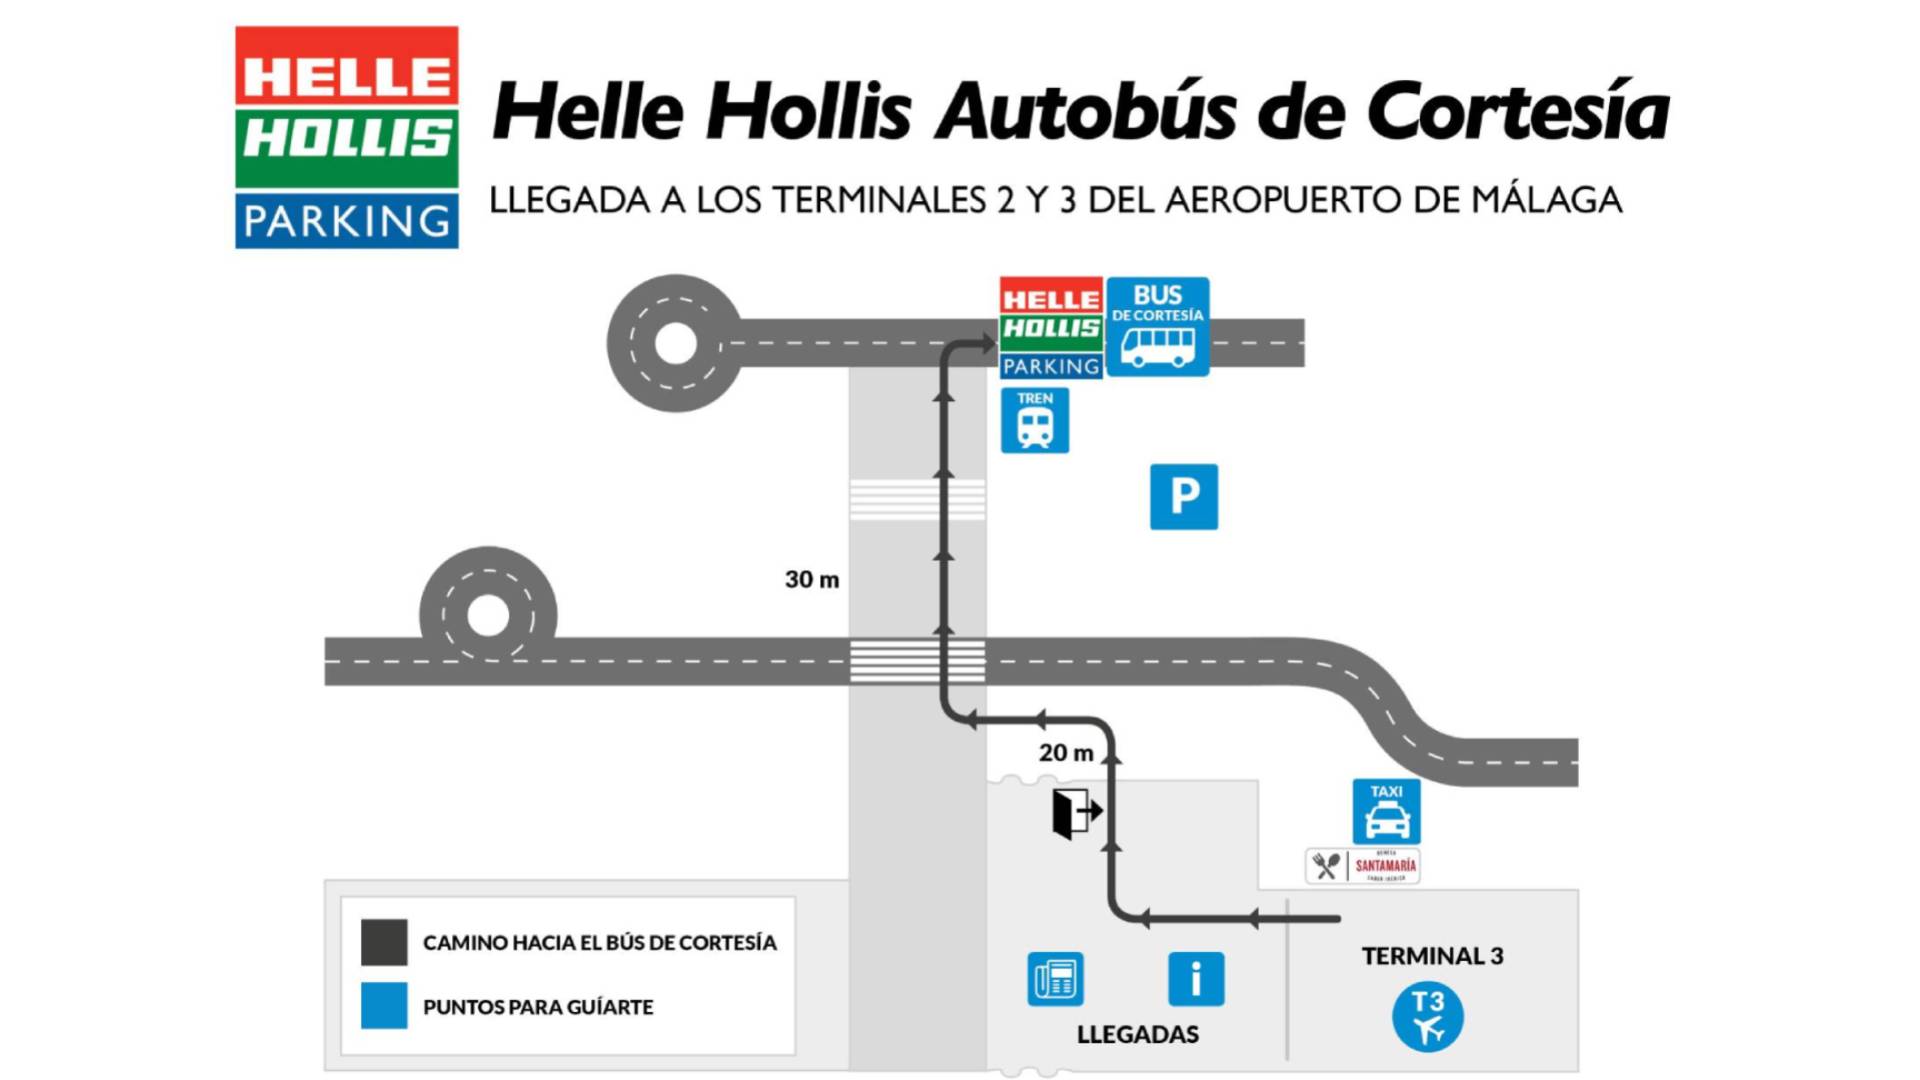 Mapa del bus de cortesía de Helle Hollis